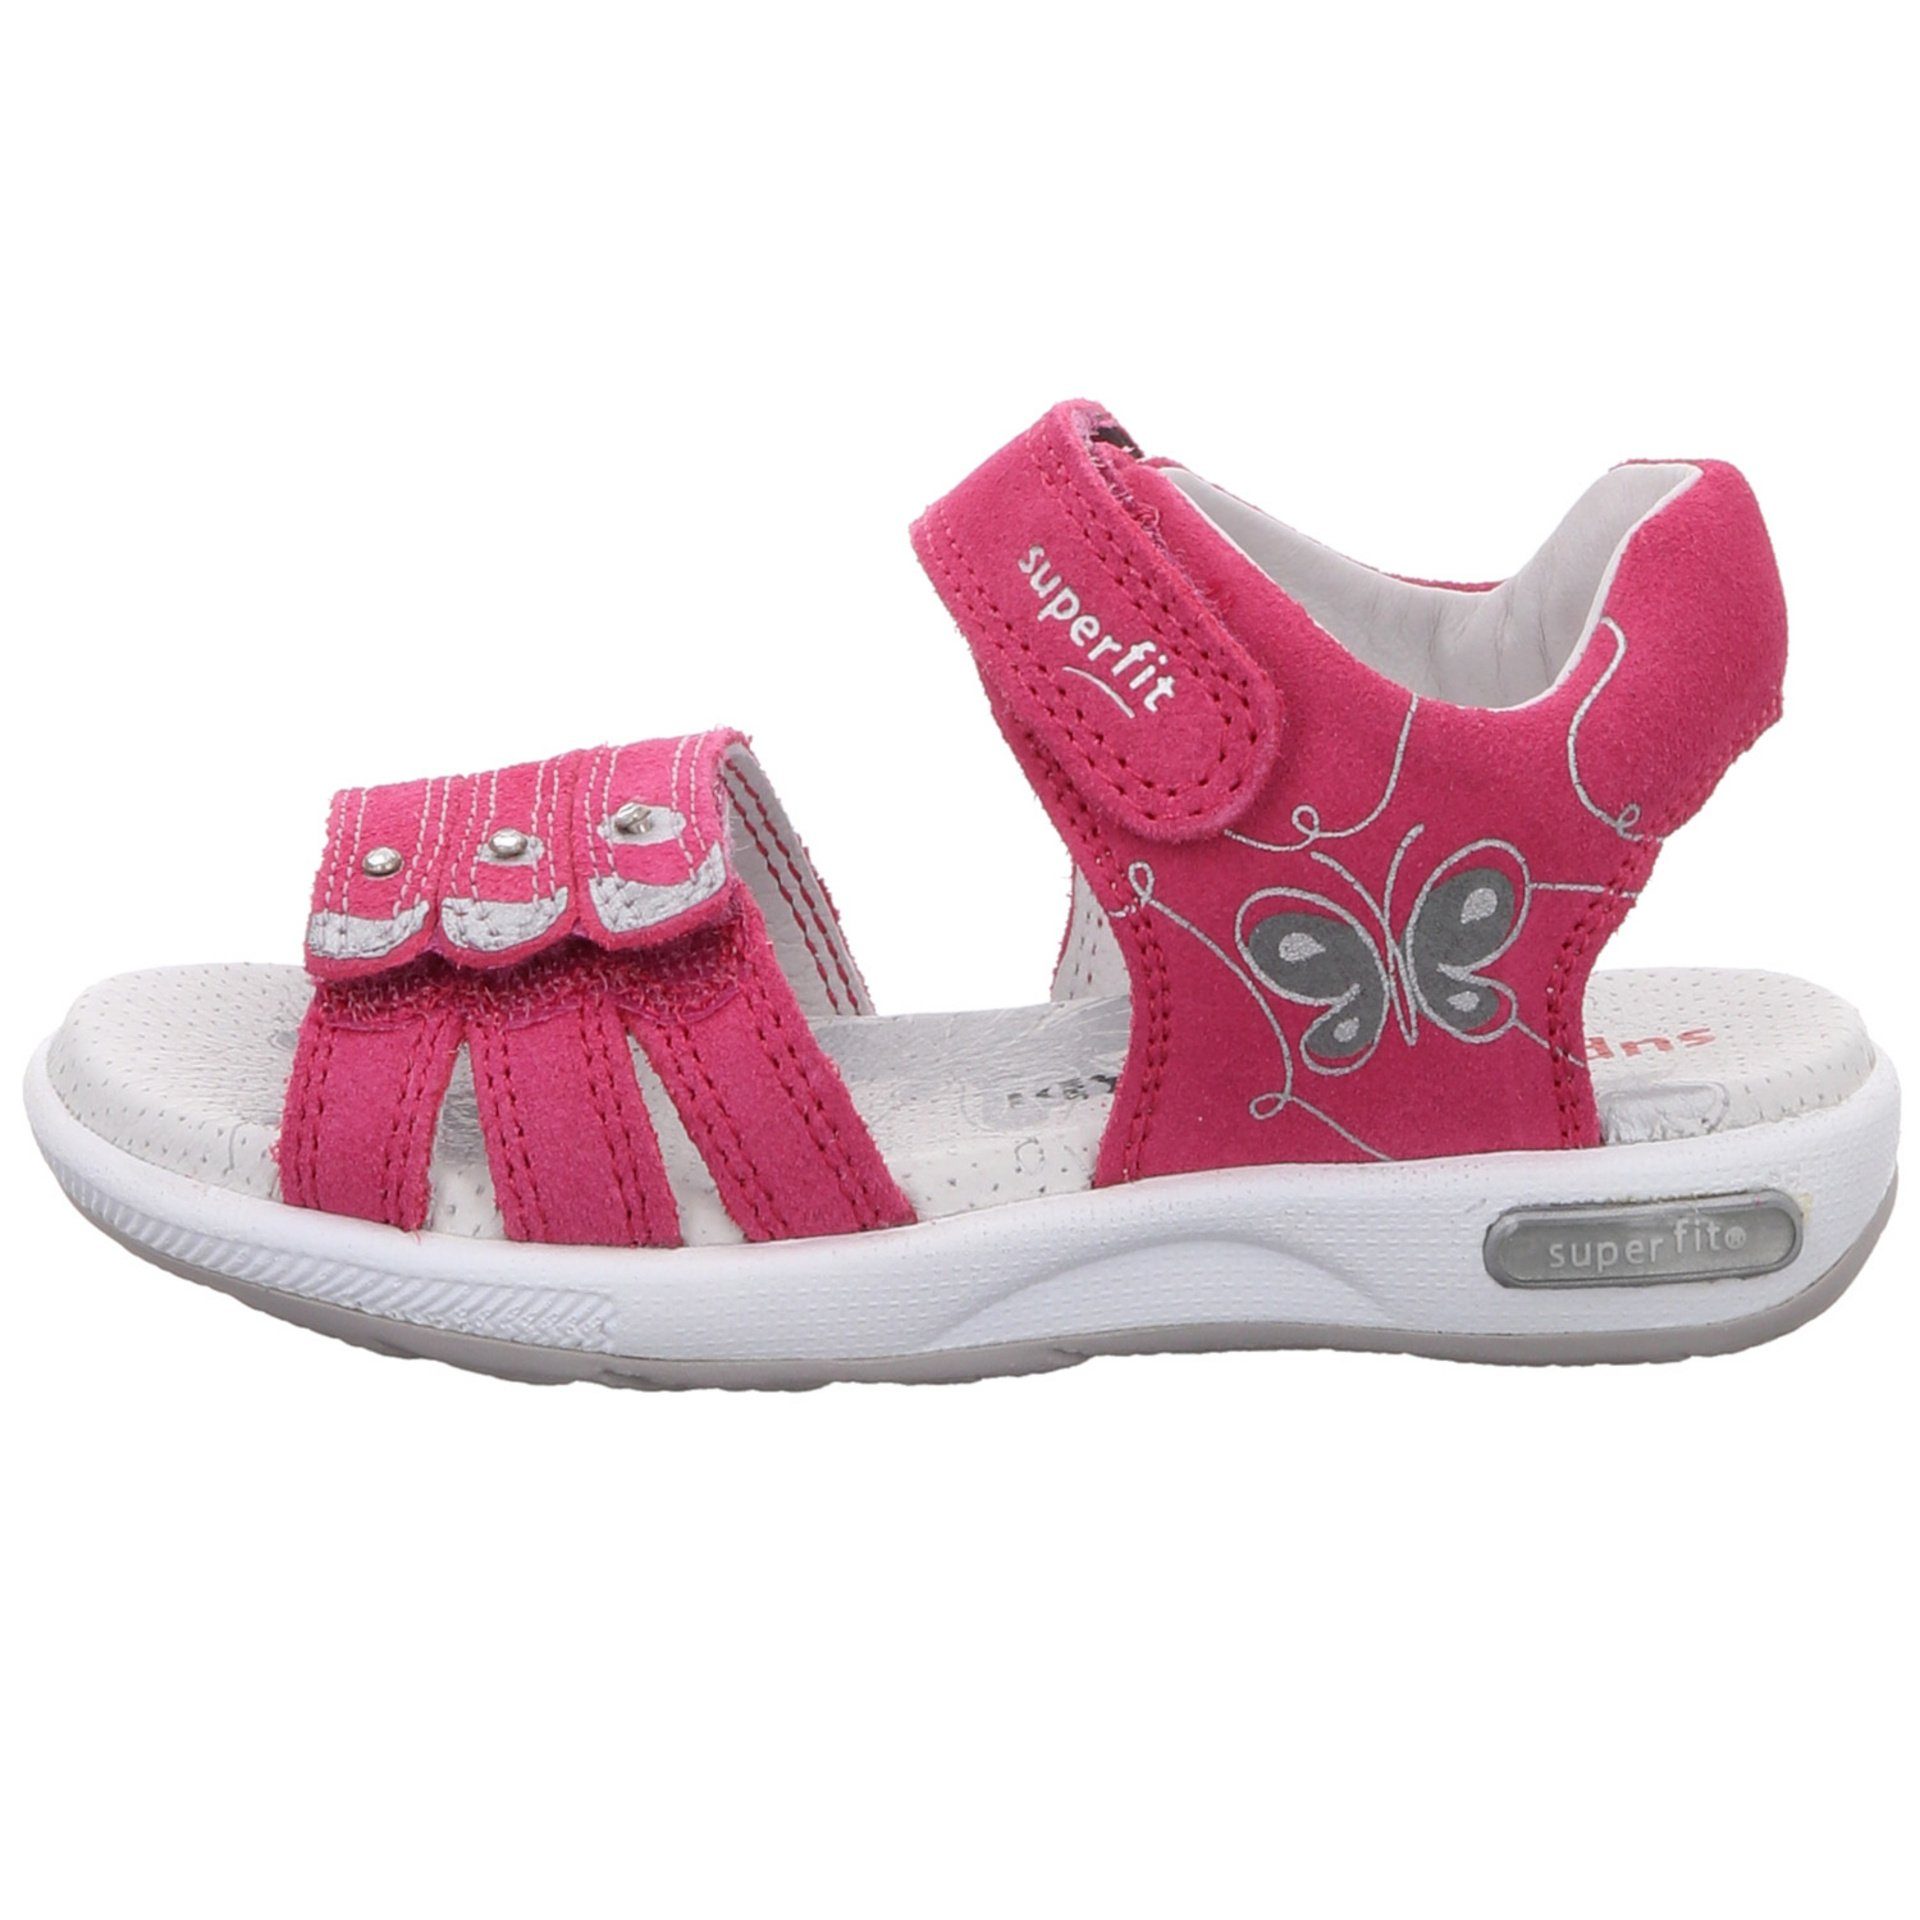 Emily Kombi Sandale Superfit Schuhe Kinderschuhe rot+lila sonst Sandale Mädchen Veloursleder Sandalen